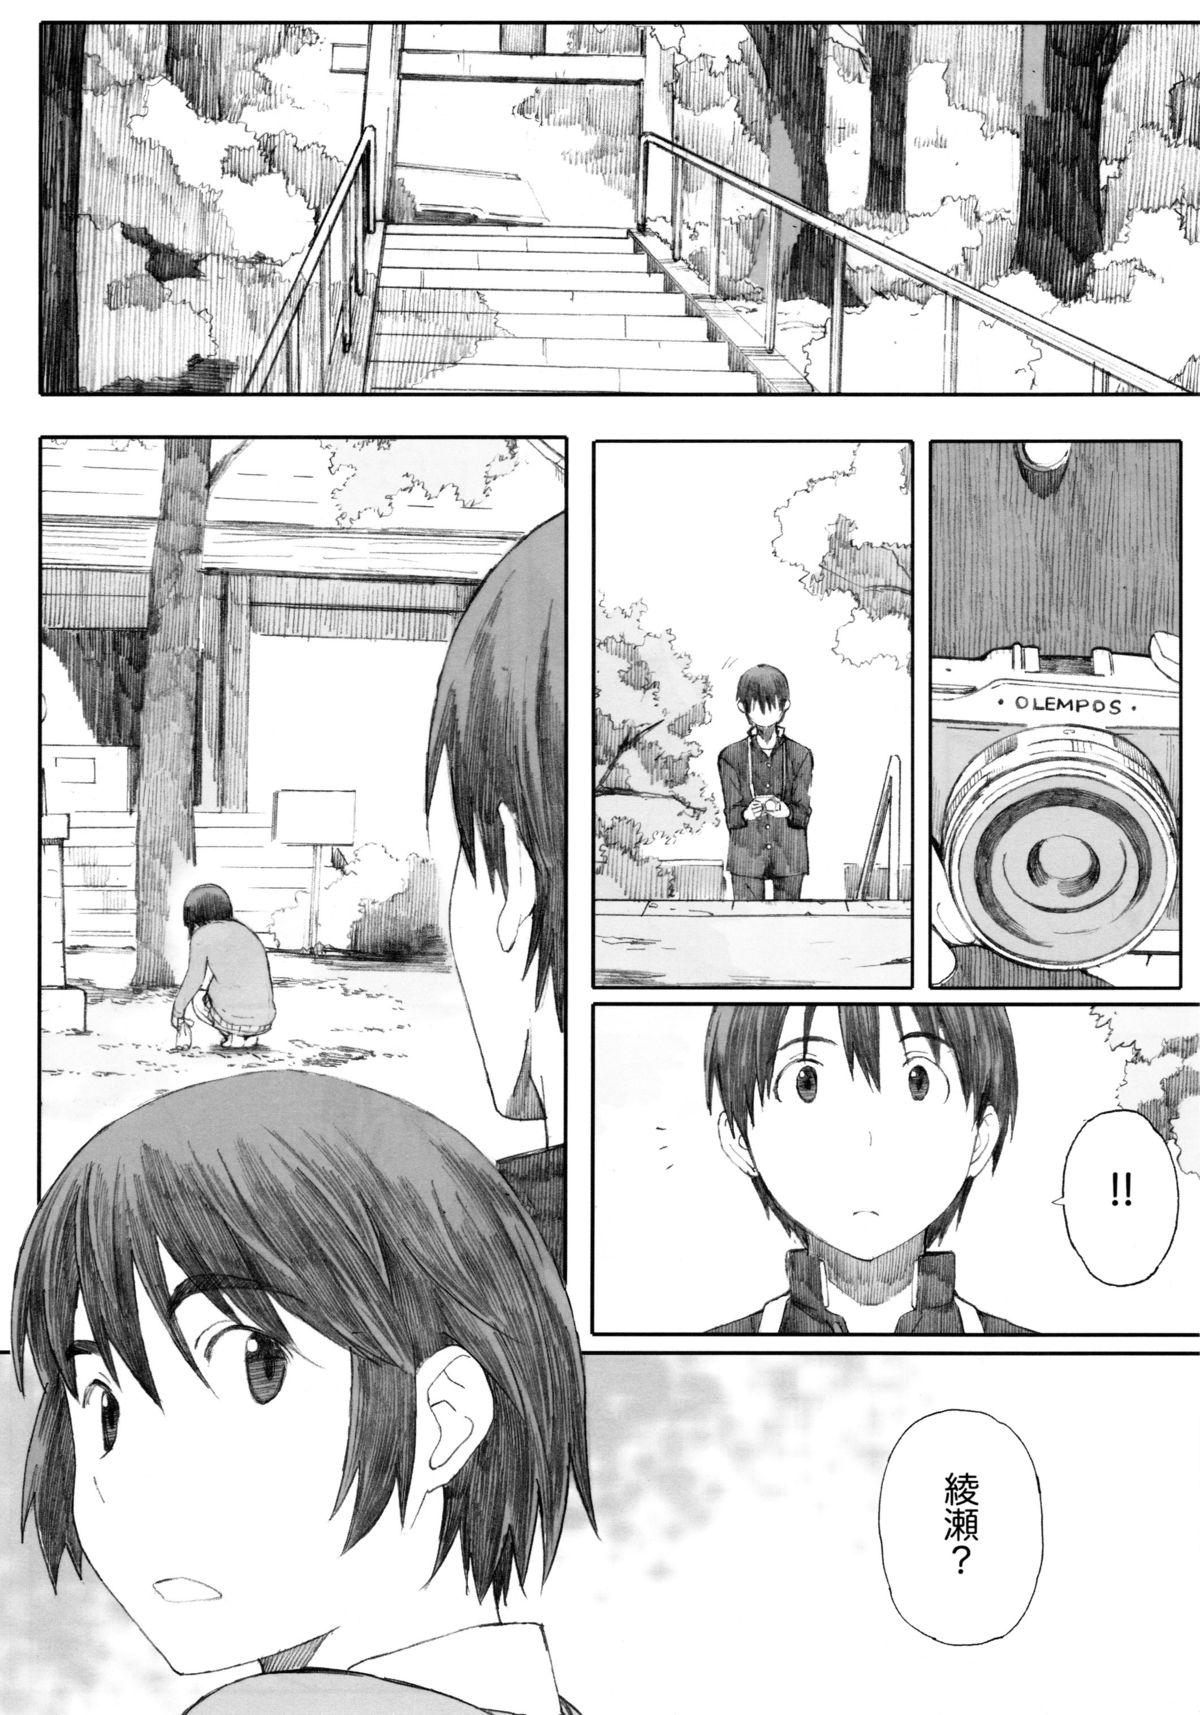 Pmv clover＊1 - Yotsubato Boquete - Page 7